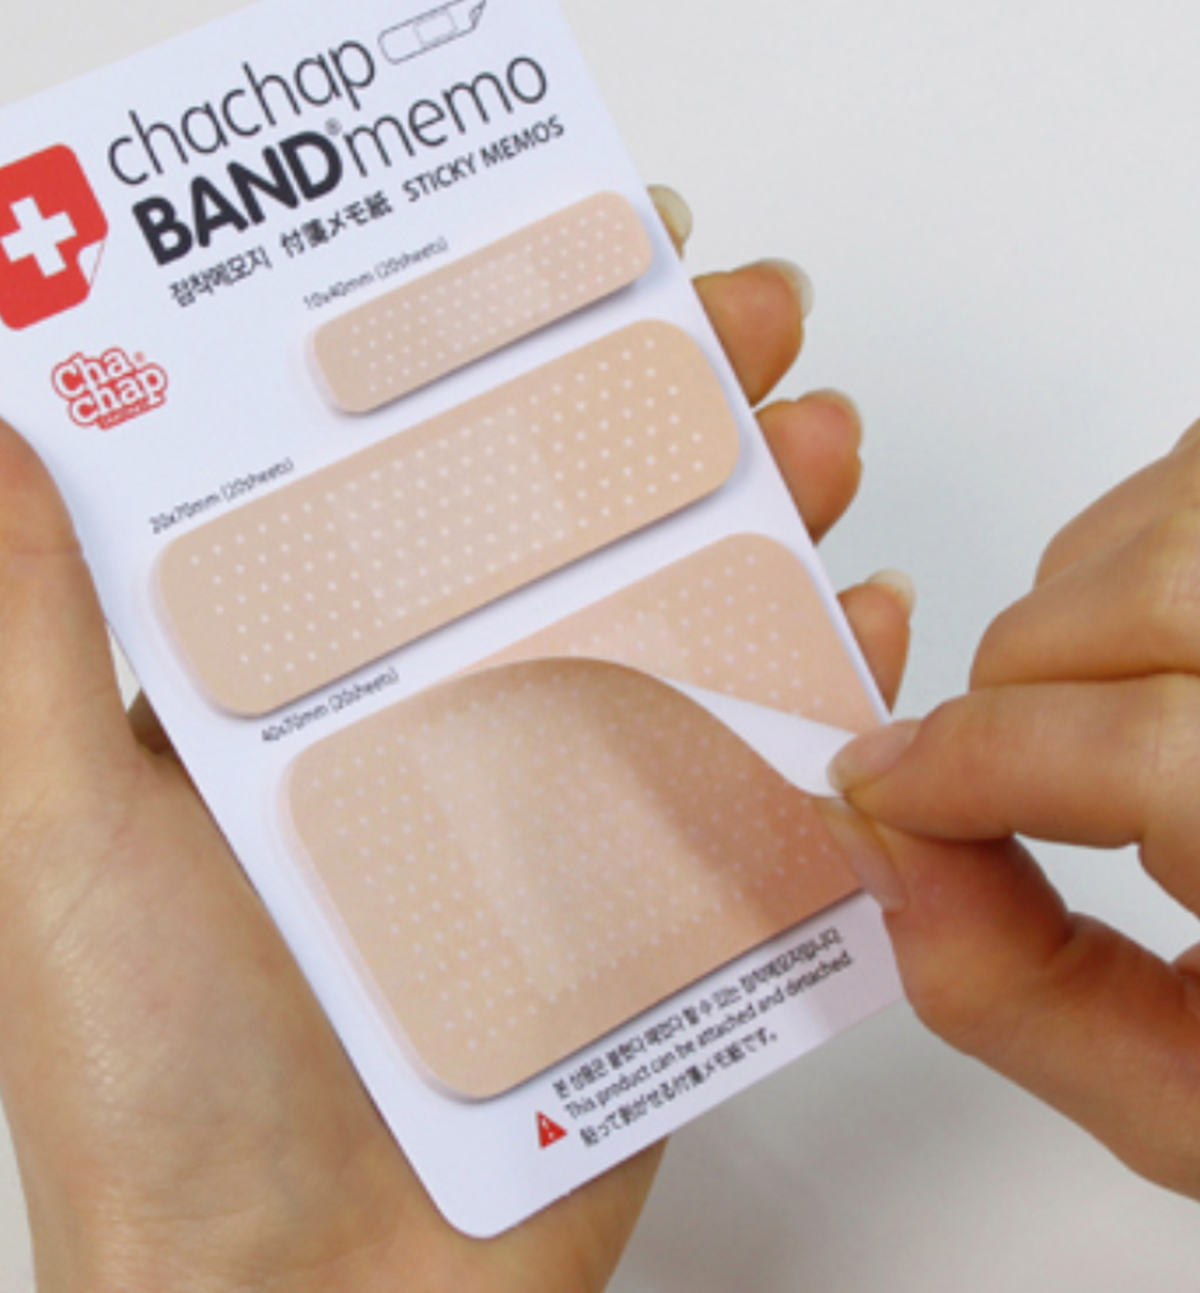 Band-Aid Memopad